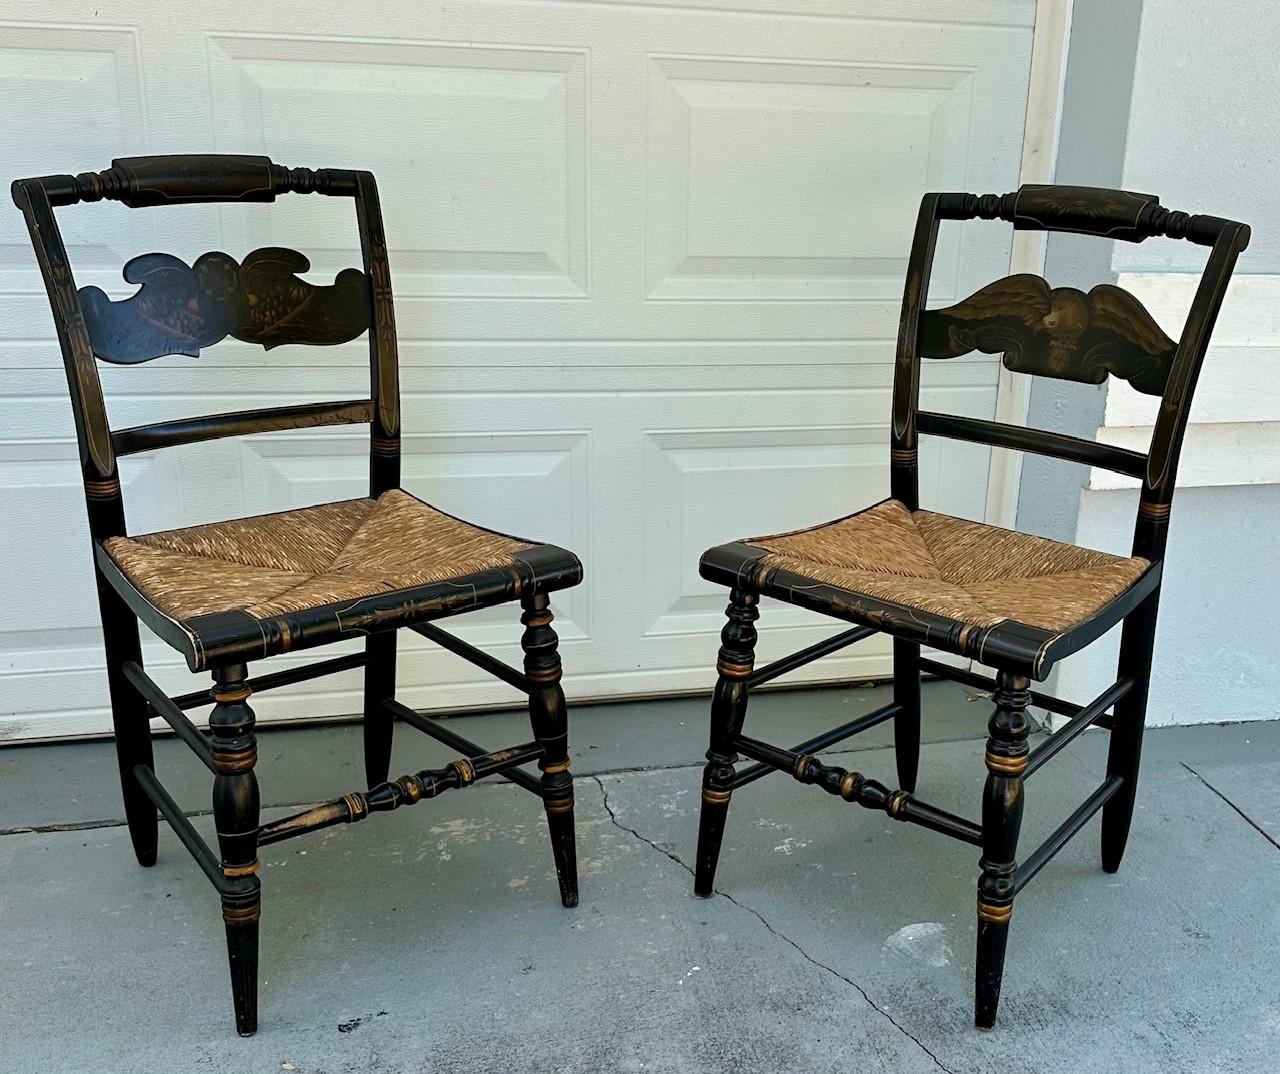 Paire de 2 chaises d'appoint Feder noires Hitchcock, sièges en jonc.

Ces chaises vintage Hitchcock sont peintes en laque noire et agrémentées de bandes ocre et de pochoirs dorés.  L'une des chaises à dossier latéral est décorée d'un motif de